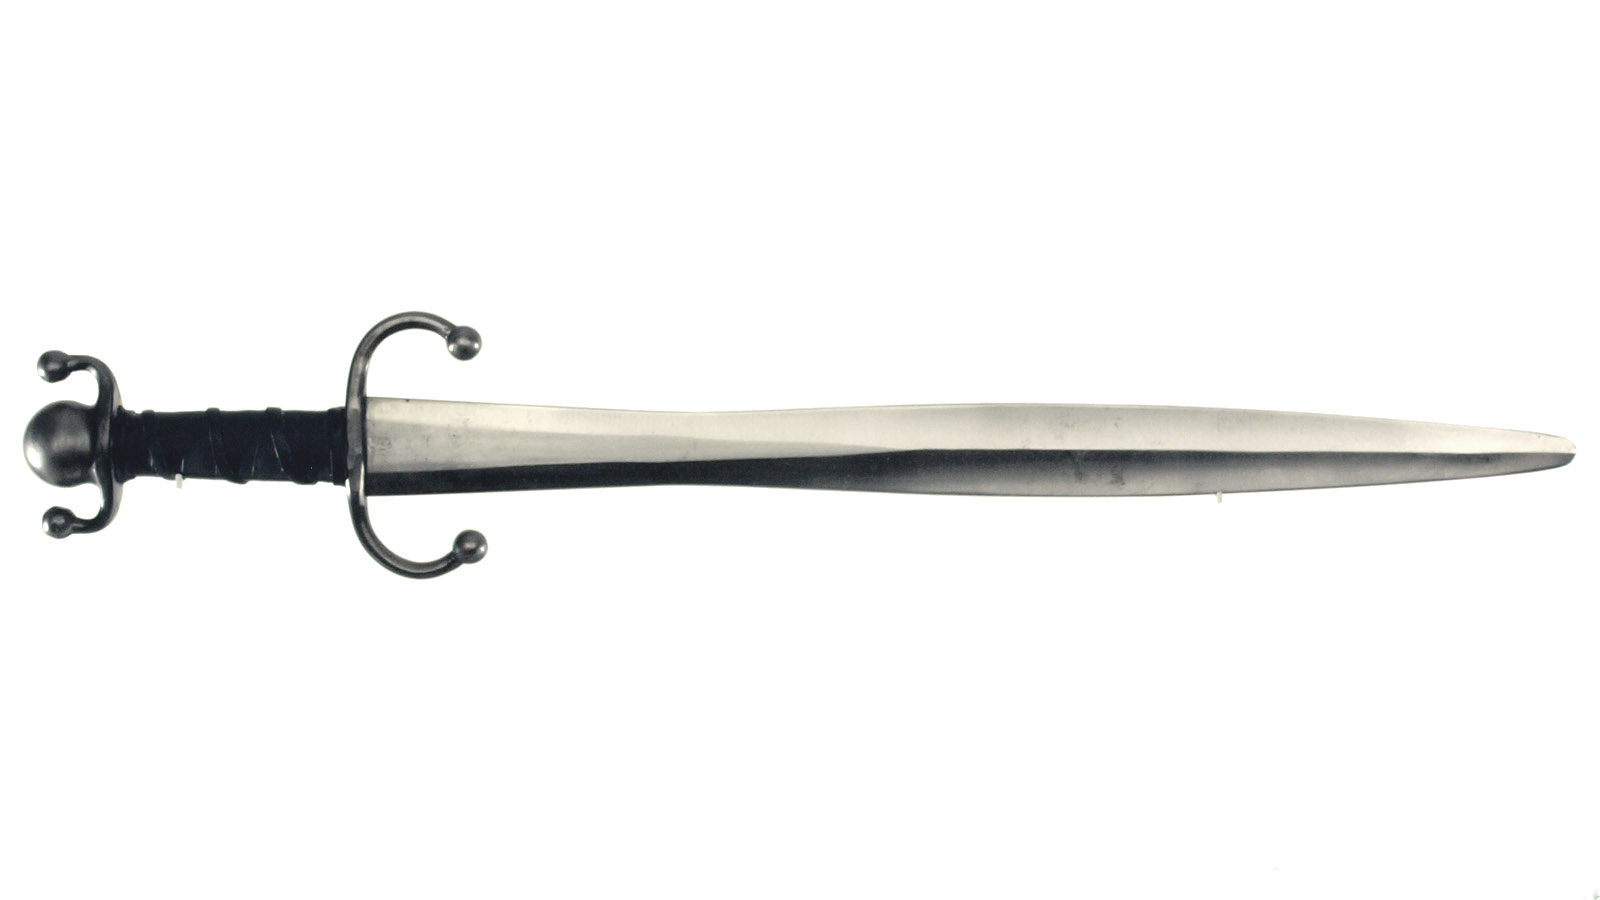 Celtic Sword, long